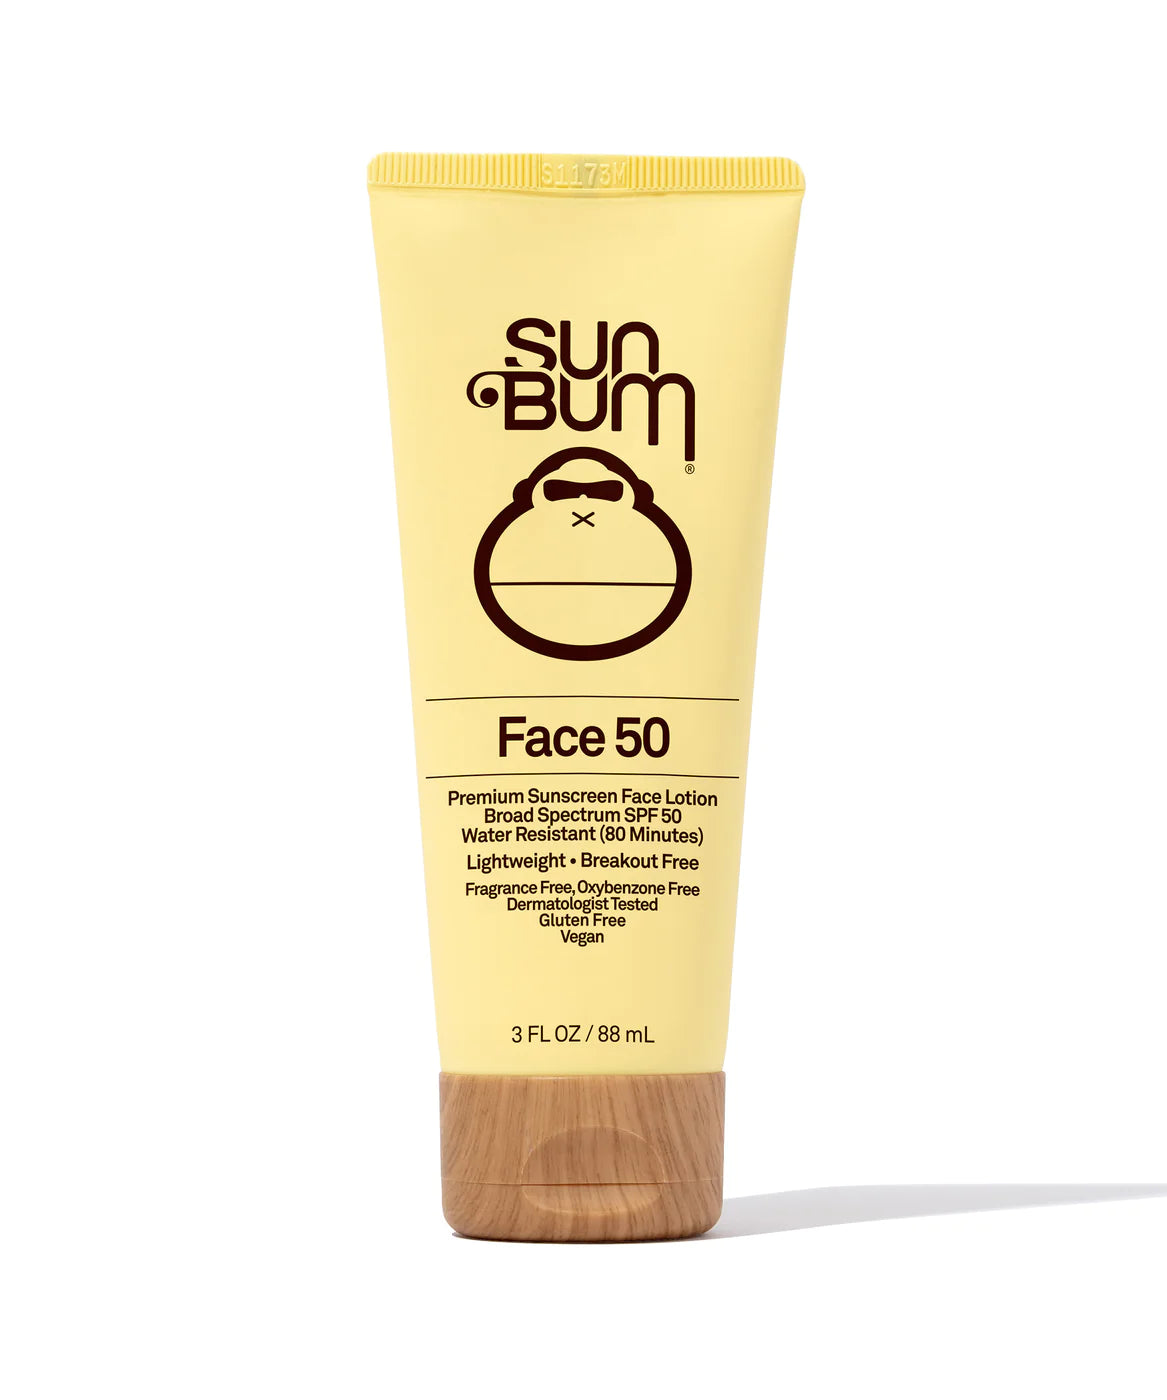 Sun Bum Face 50